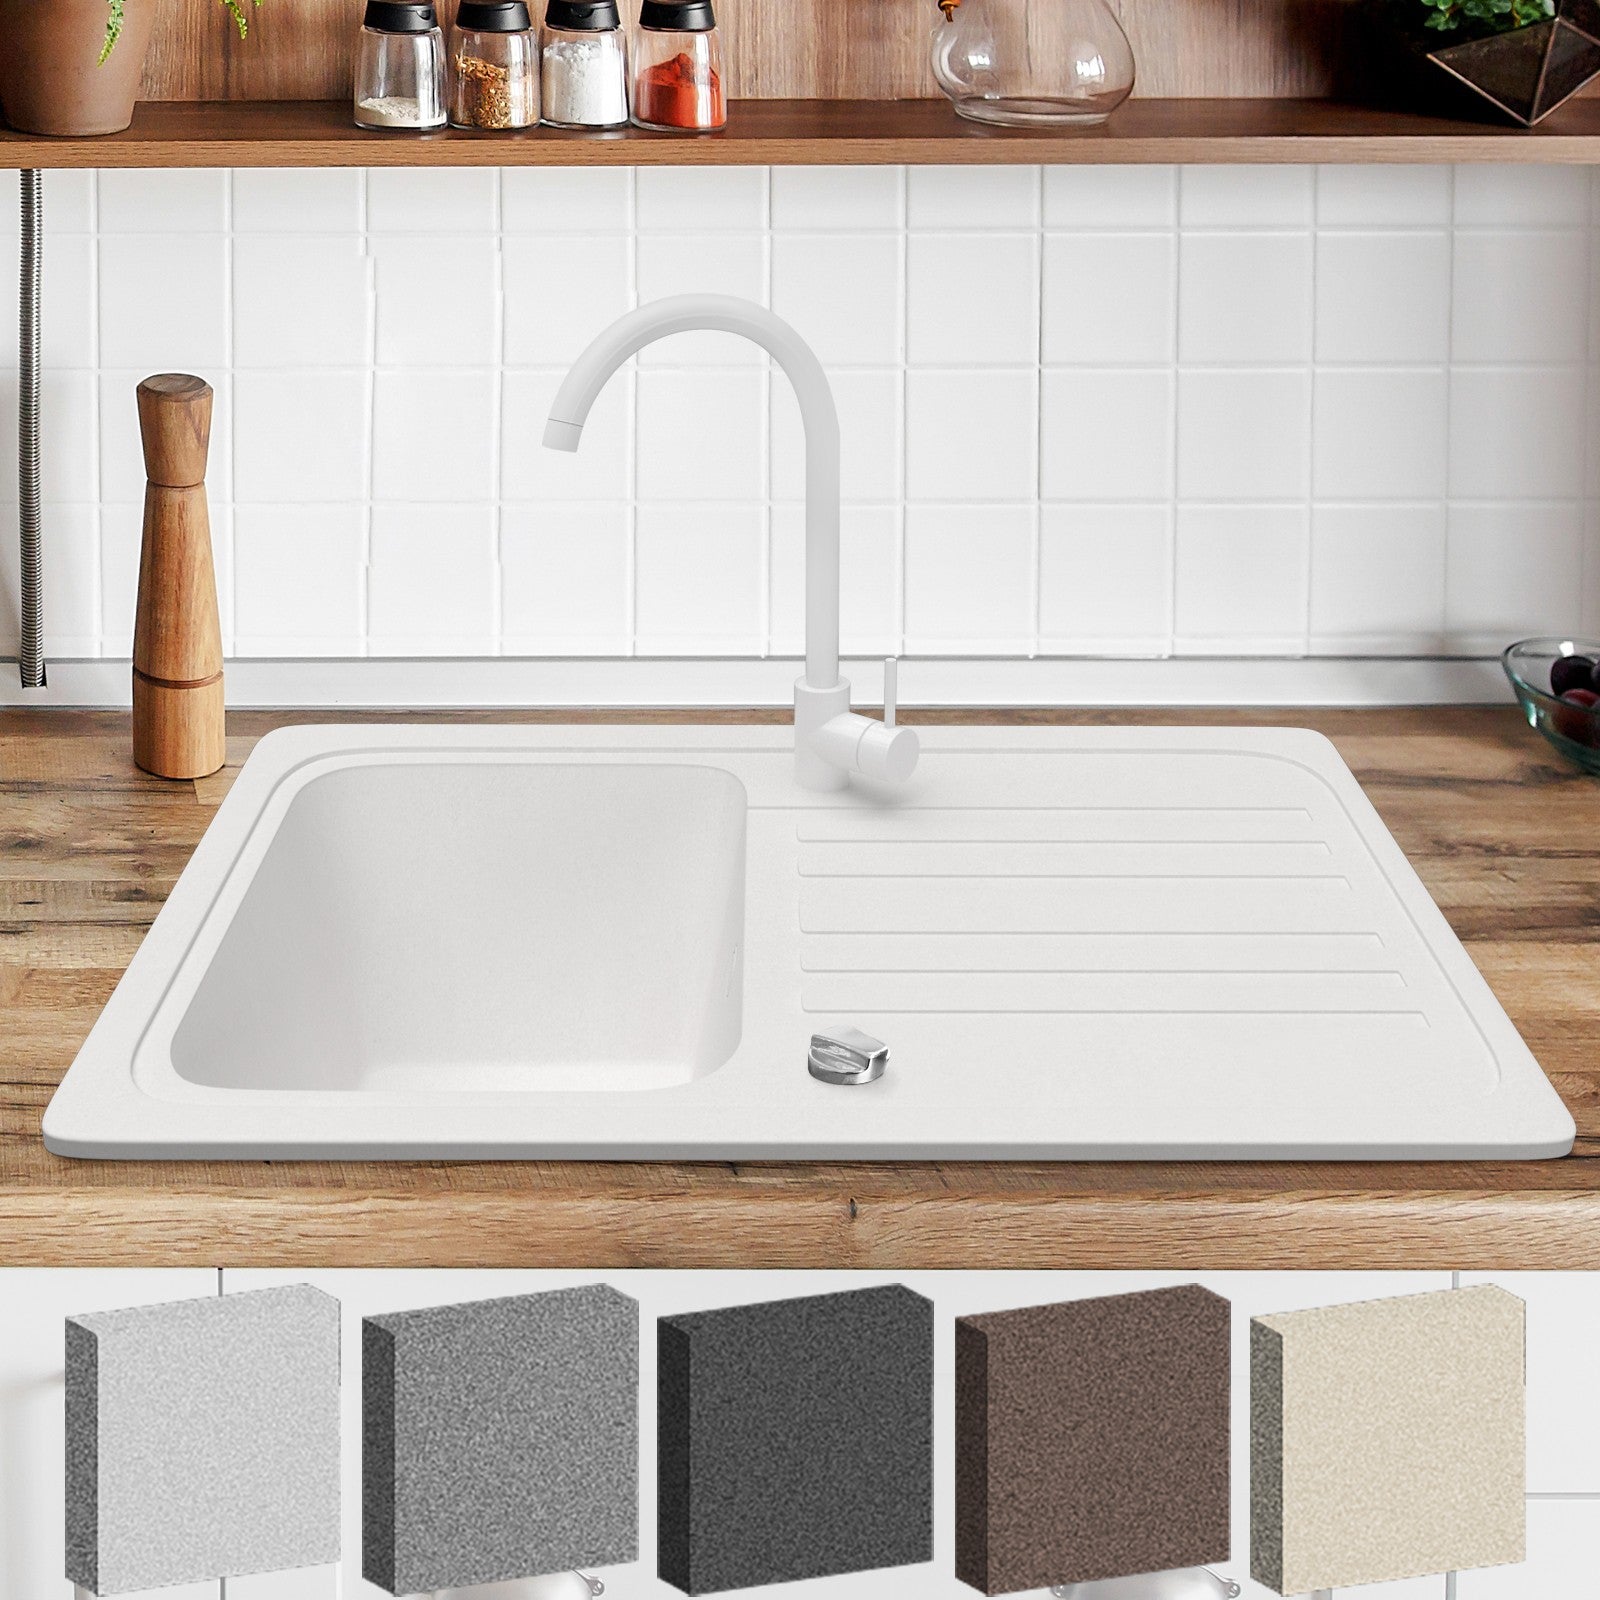 Billede af Køkkenvask - granitsæt ca. 30" x 18" m/ afløb, hvid vandhane, vendbar aftrækker, rektangel, hvid